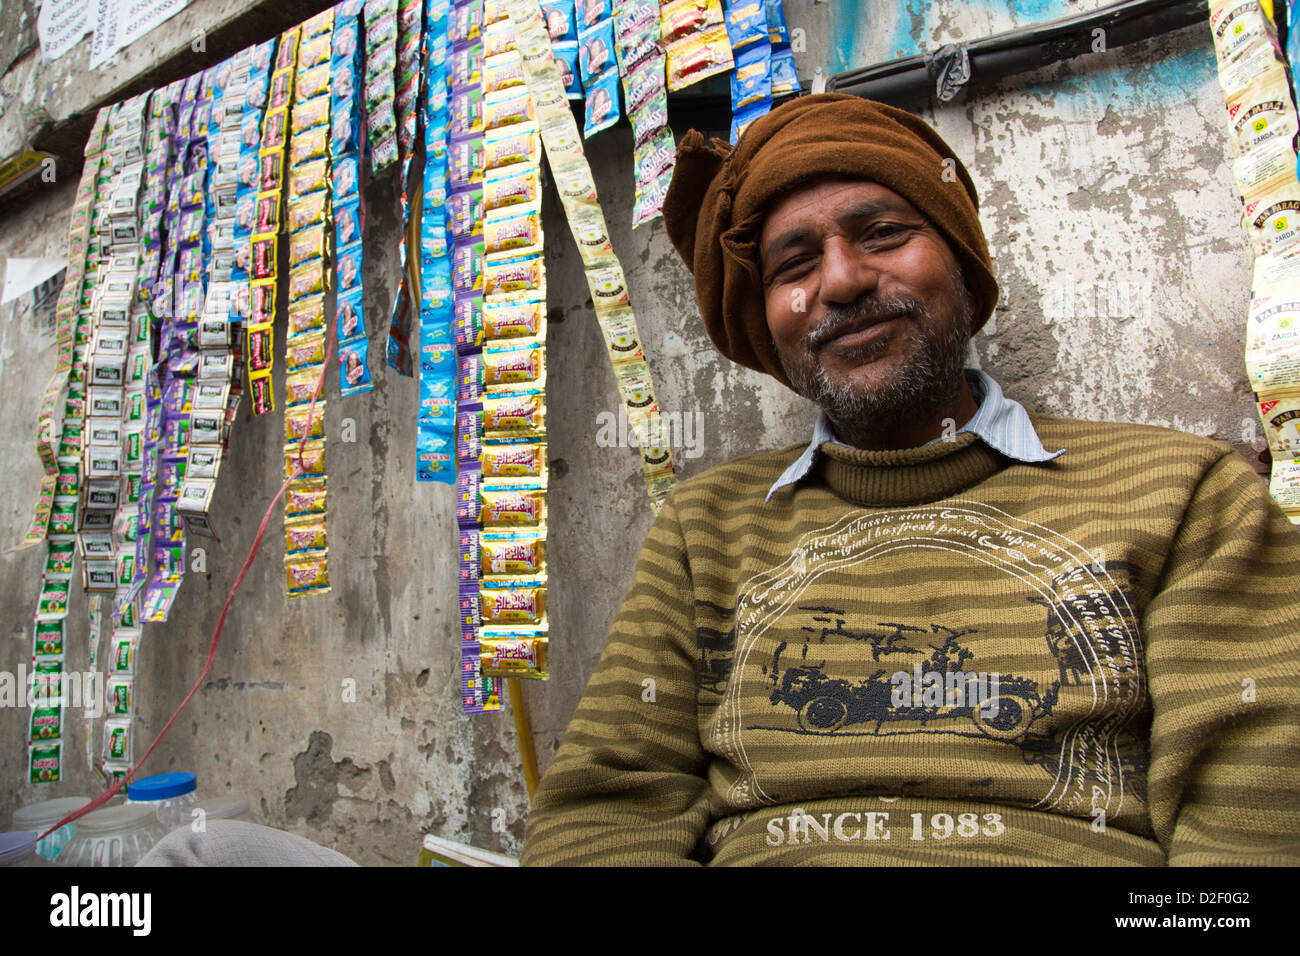 Paan vendor, Delhi, India Stock Photo